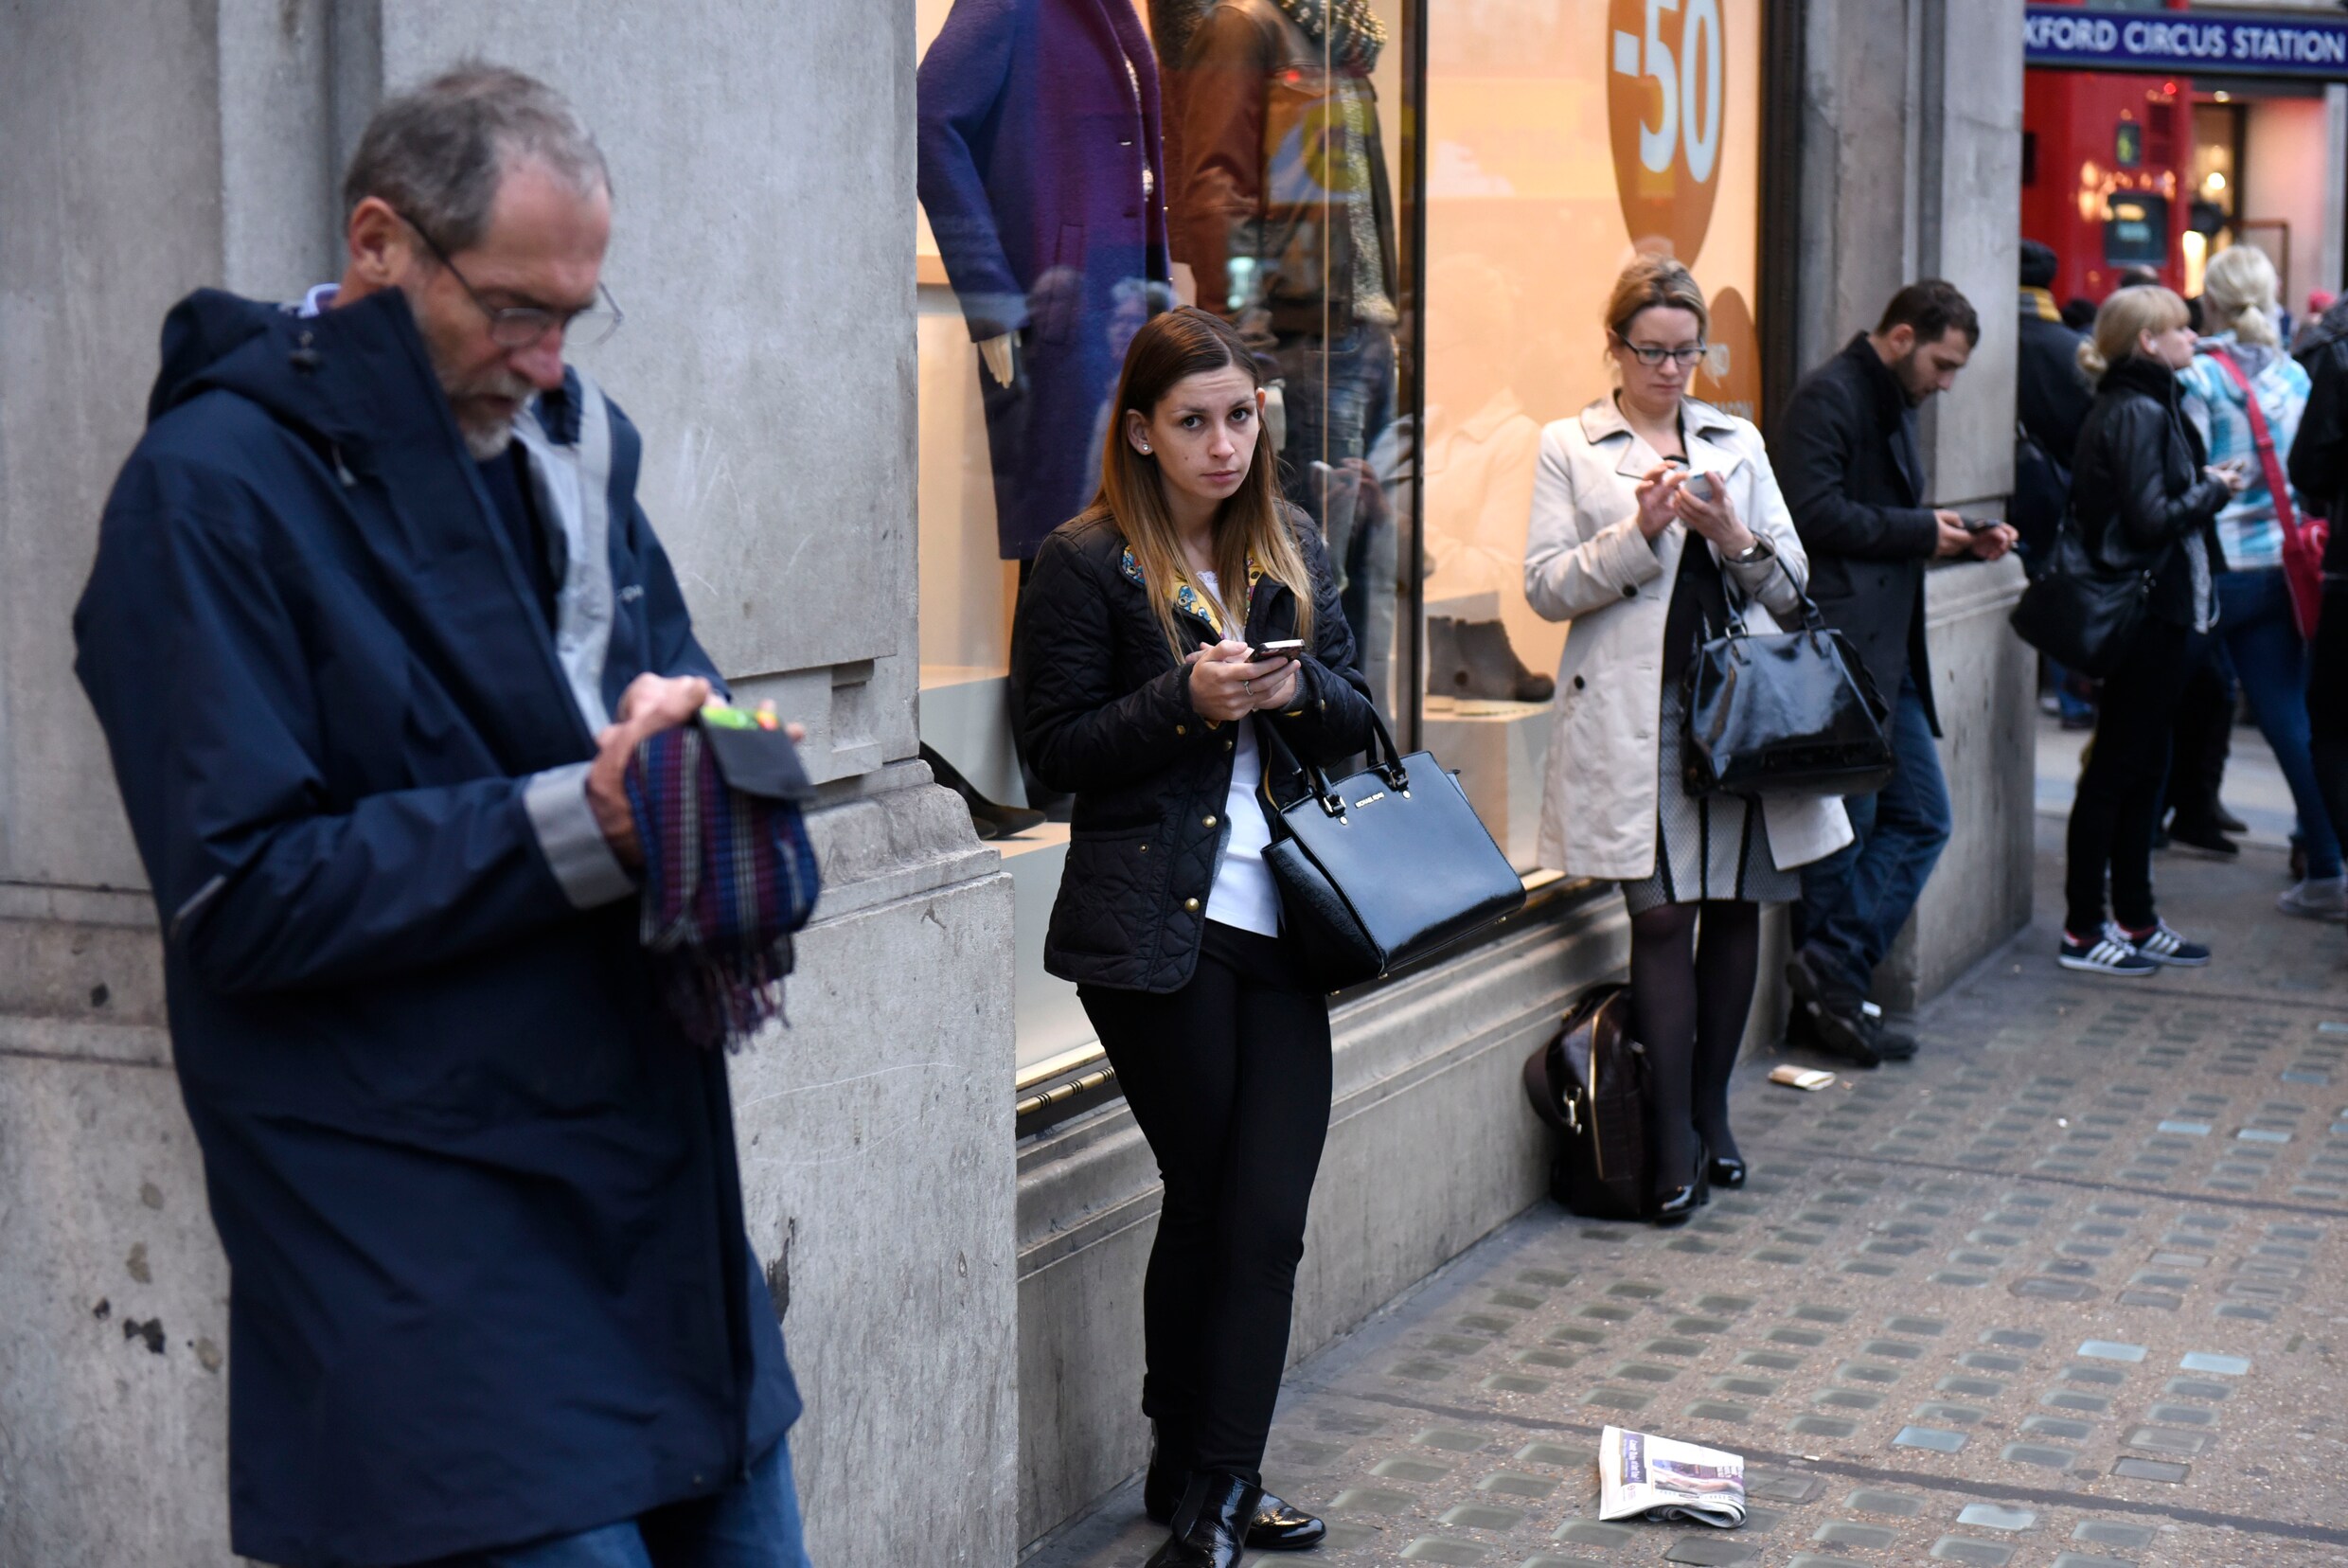 Technisch probleem: maanden uitstel voor gratis wifi in Europese steden